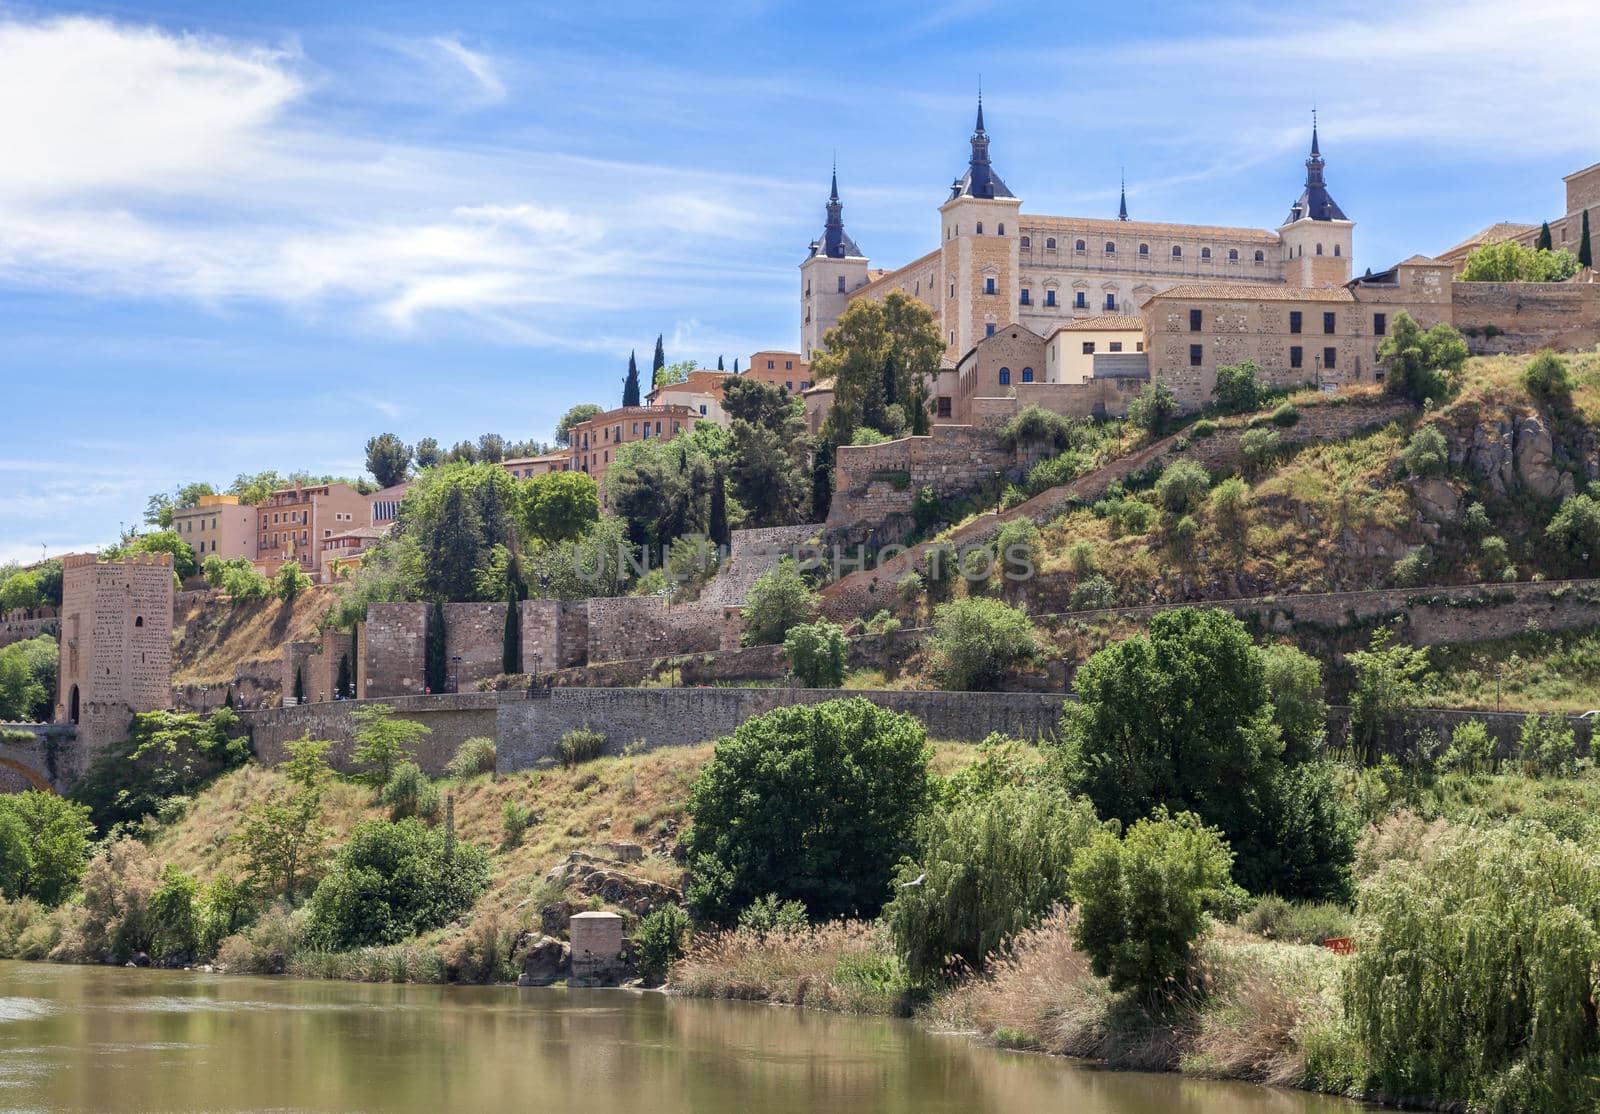 View of the Alcazar in Toledo, Spain.